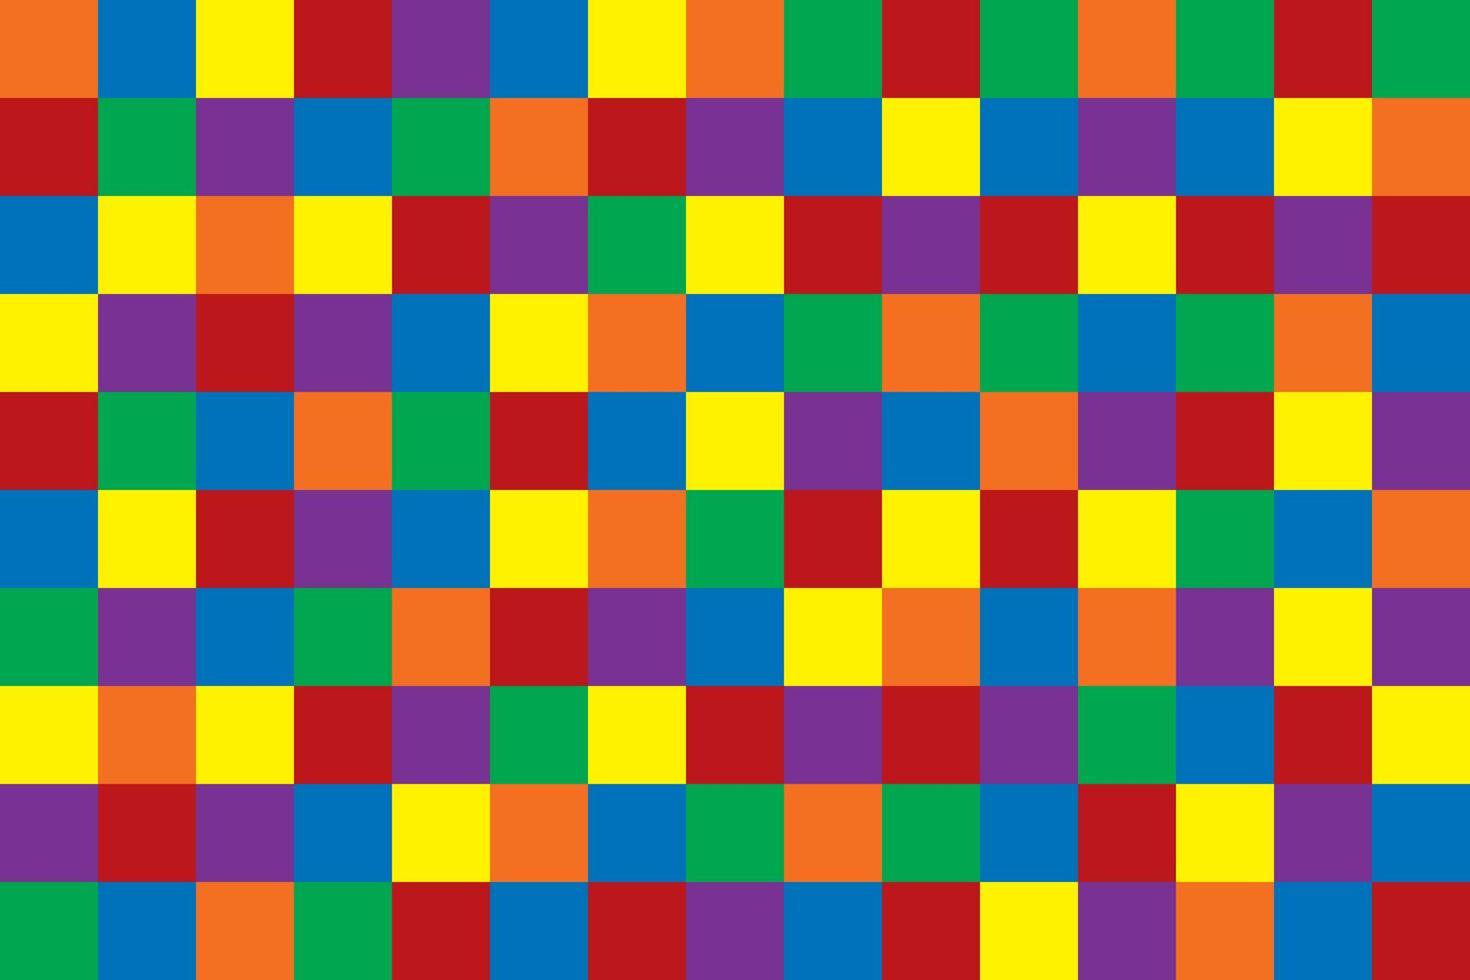 motivo astratto a blocchi con forma quadrata geometrica. Molte linee di colore con colori primari sono blu, rosso, giallo. i colori secondari sono viola, arancione, verde. illustrazione vettoriale. vettore